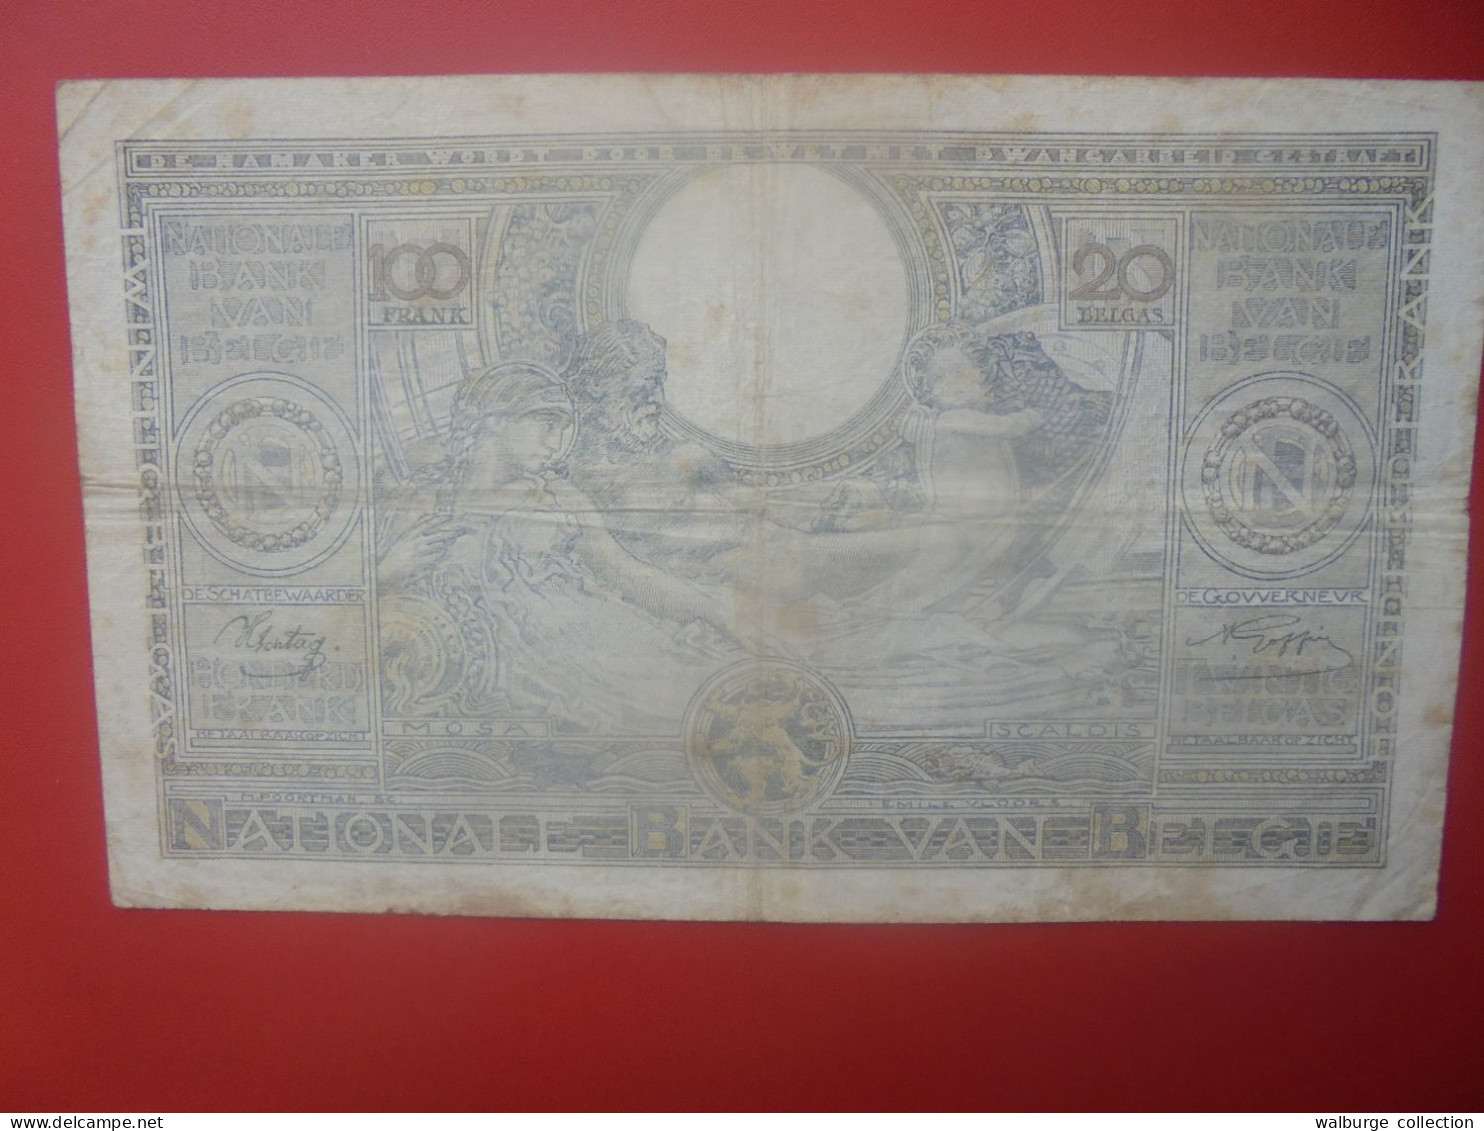 BELGIQUE 100 Francs 1942 Circuler COTES:5-10-25 EURO (B.33) - 100 Franchi & 100 Franchi-20 Belgas